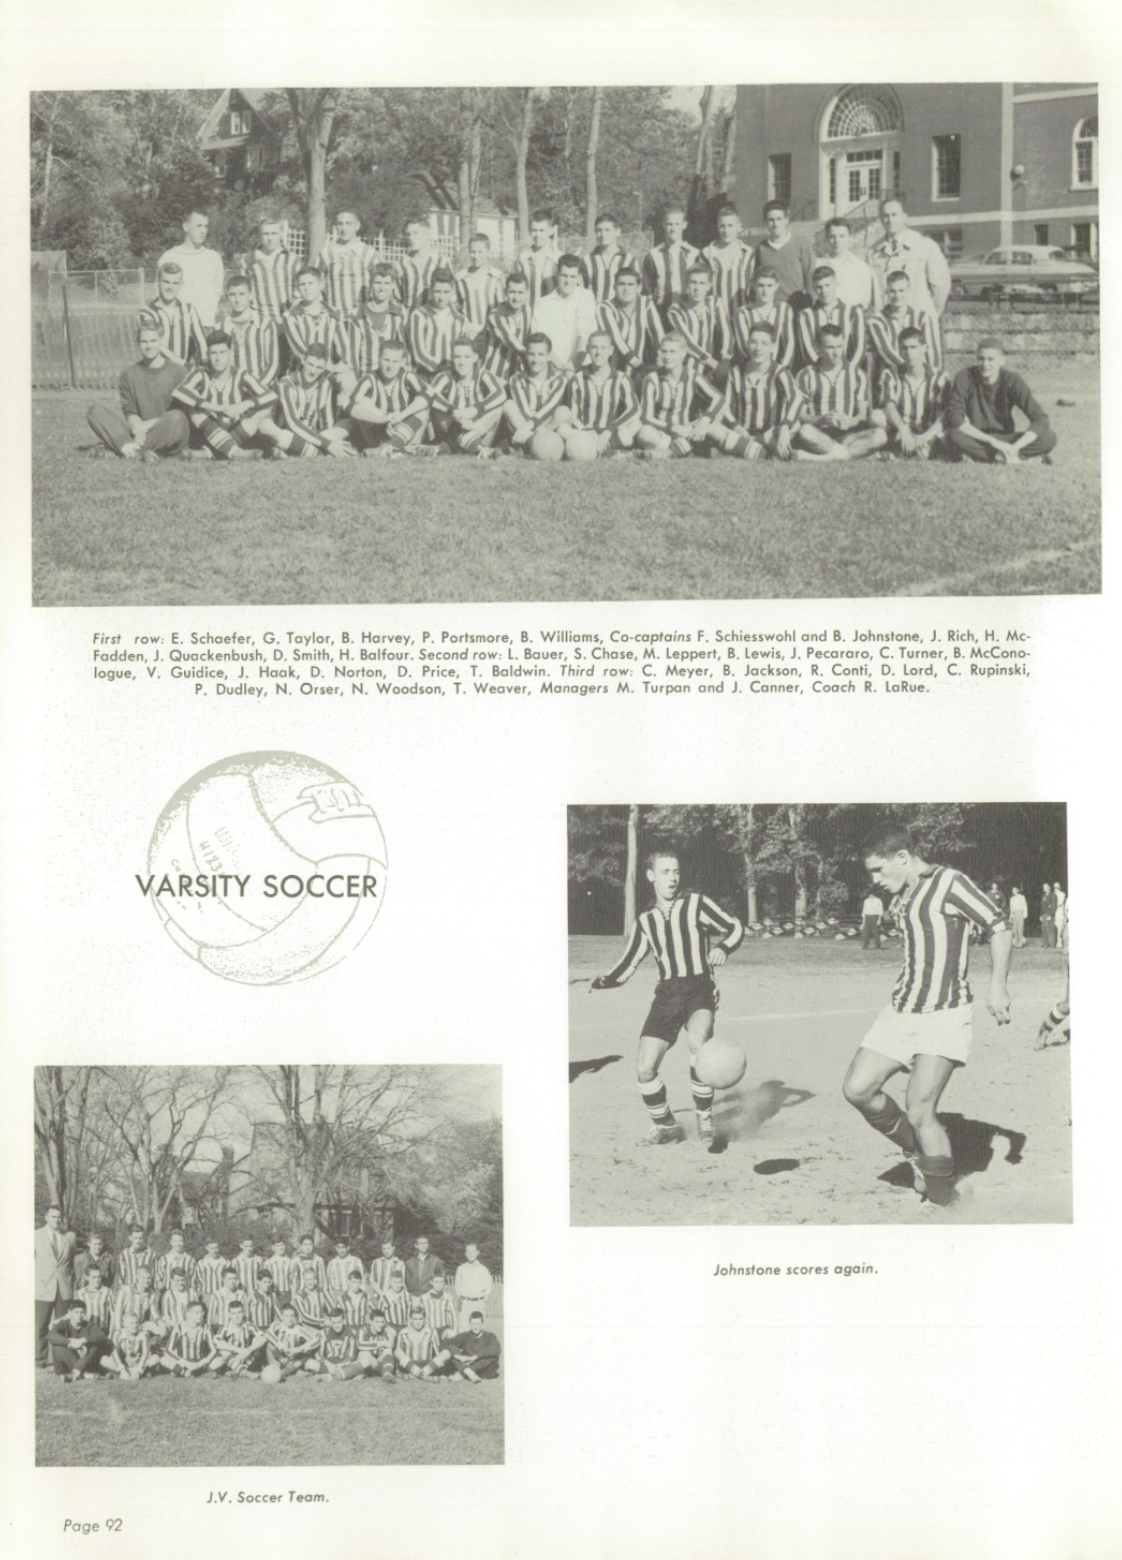 1957 Boys’ Soccer Team